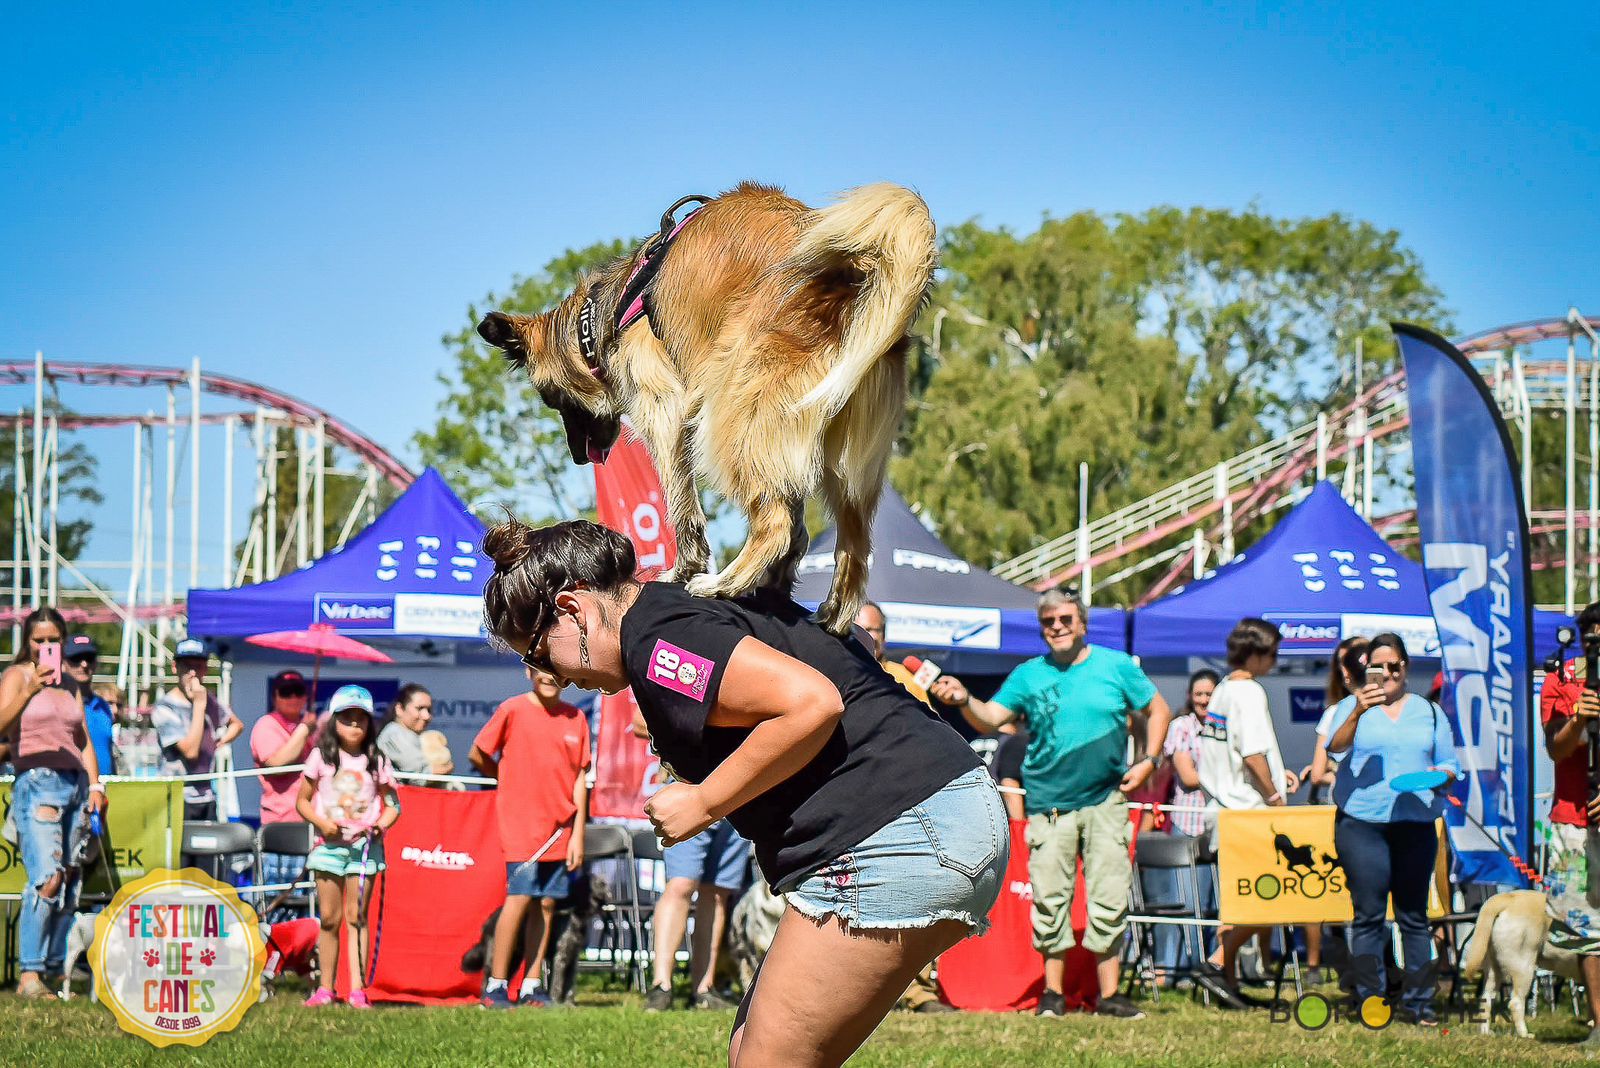 Este sábado regresa el Festival de Canes al Parque Saval con nueve competencias para mascotas